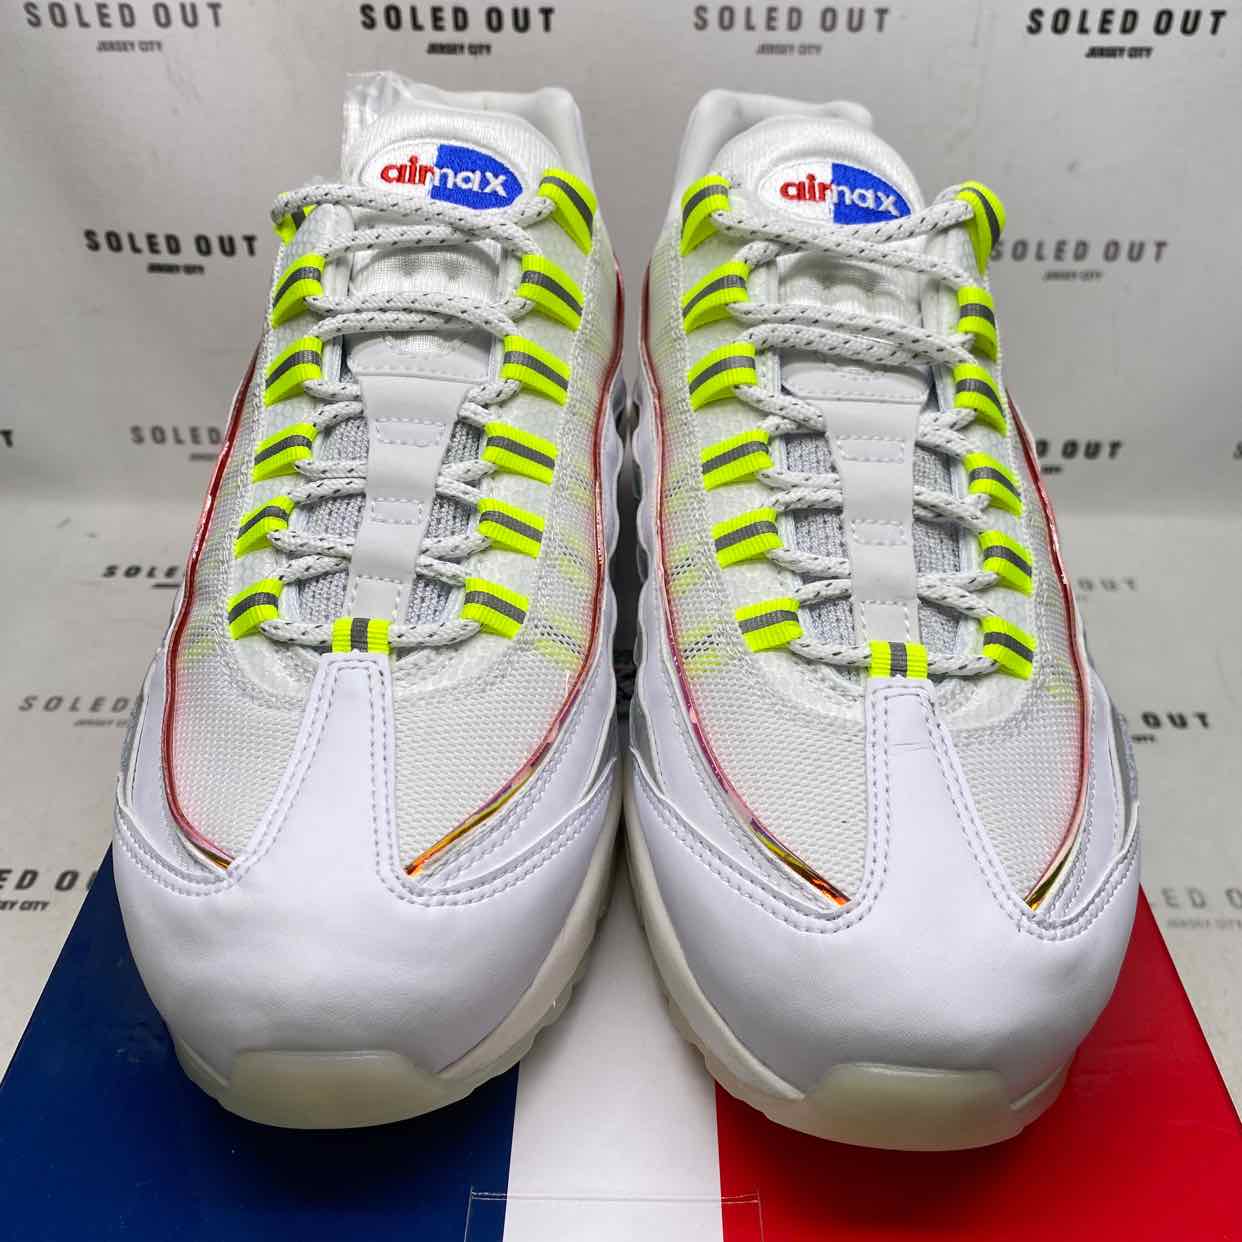 Nike Air Max 95 "De Lo Mio" 2020 New Size 9.5